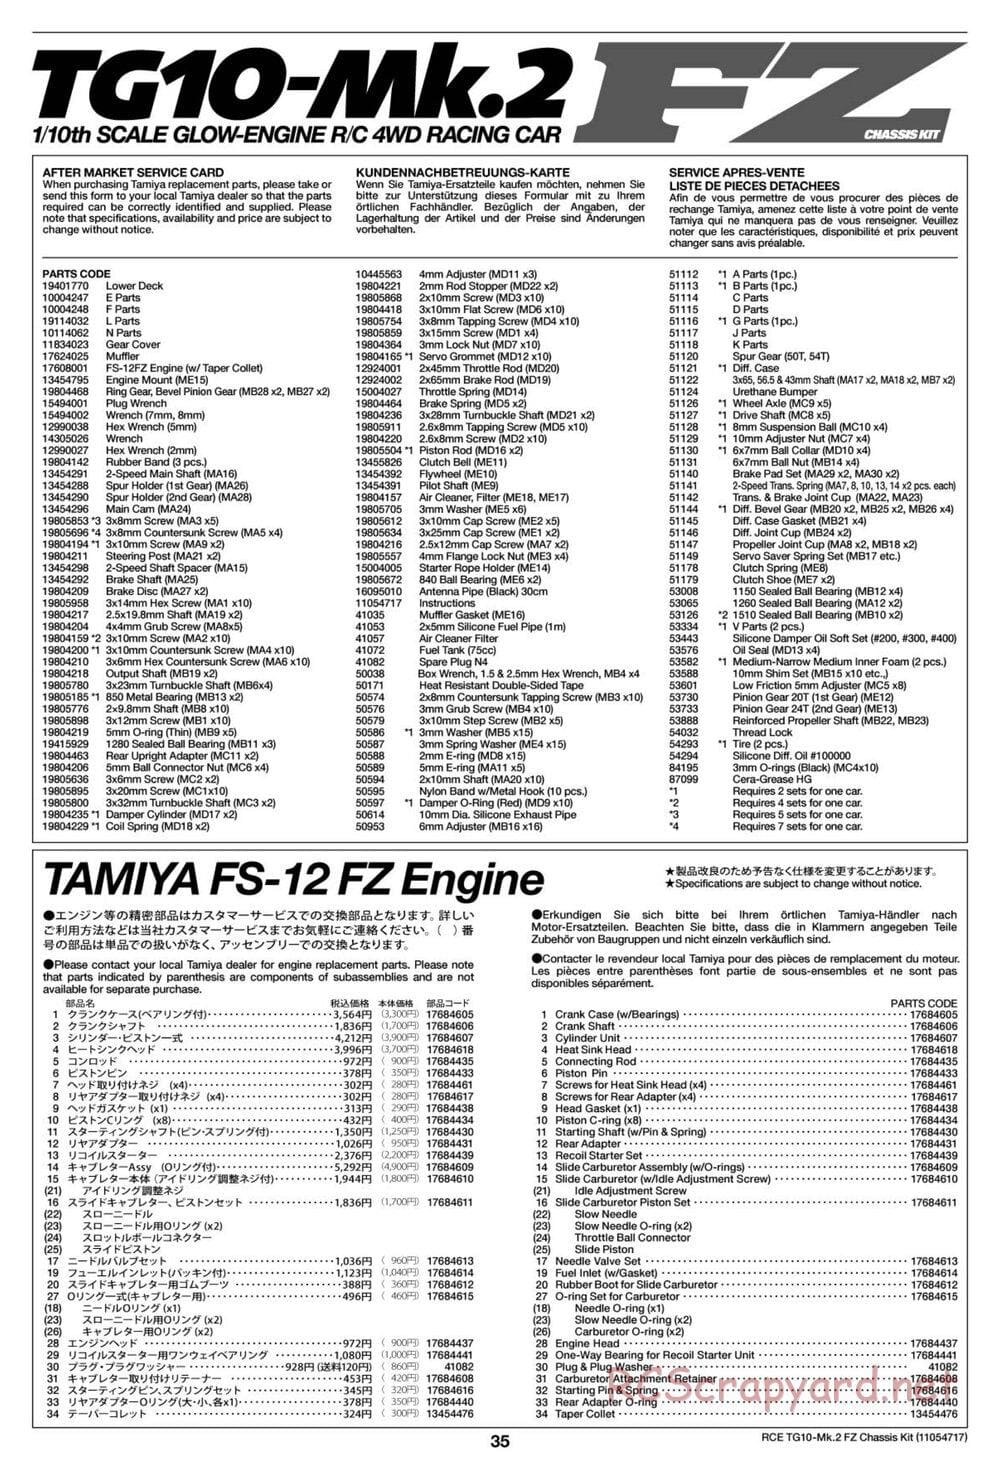 Tamiya - TG10 Mk.2 FZ Chassis - Manual - Page 35